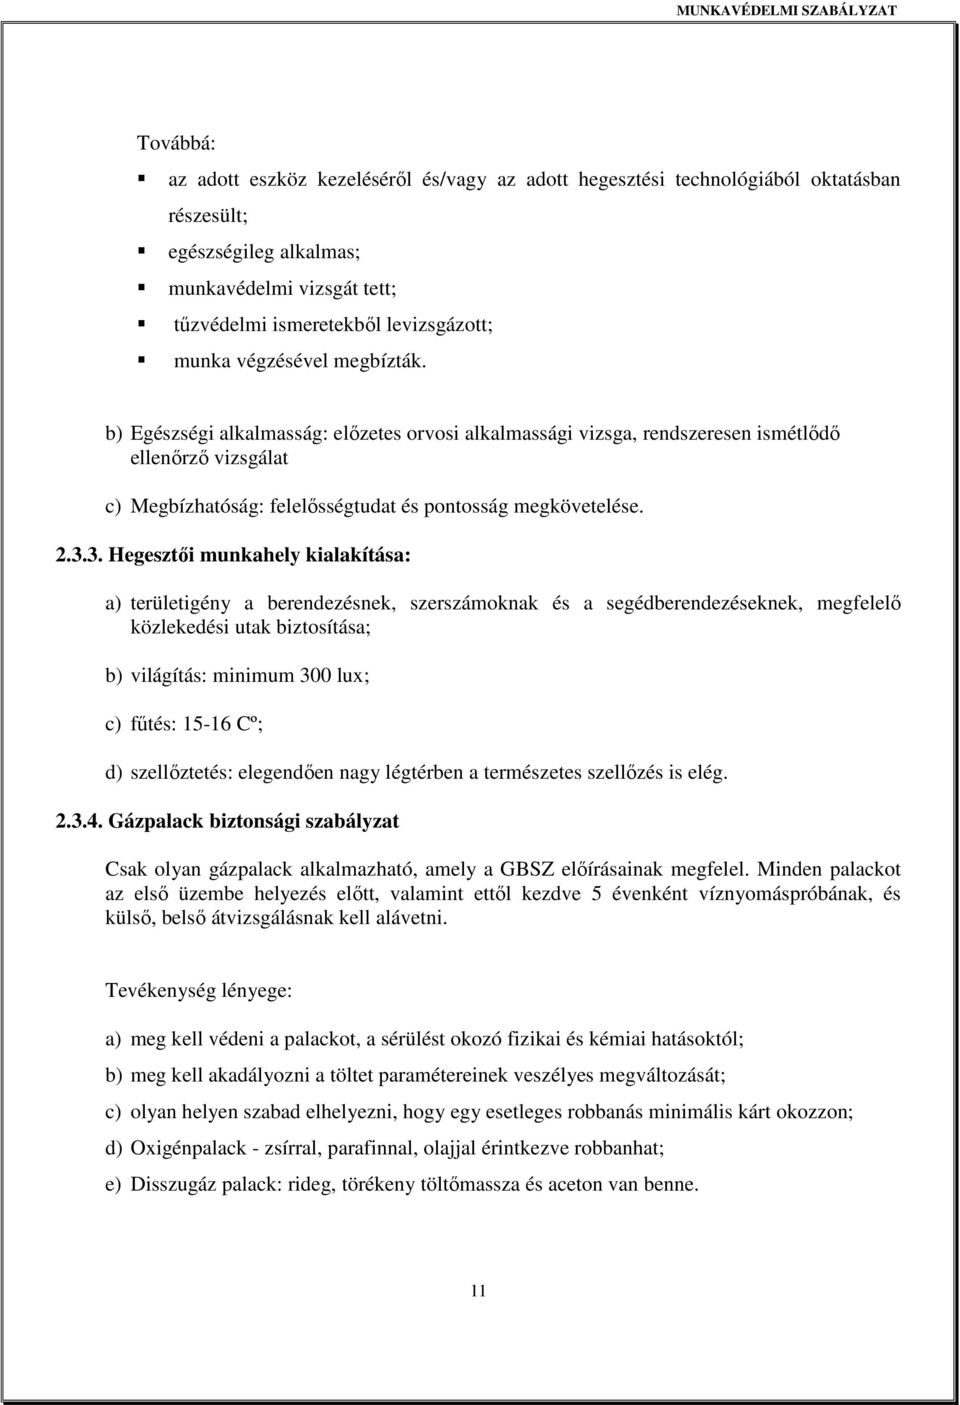 3. Hegesztıi munkahely kialakítása: a) területigény a berendezésnek, szerszámoknak és a segédberendezéseknek, megfelelı közlekedési utak biztosítása; b) világítás: minimum 300 lux; c) főtés: 15-16